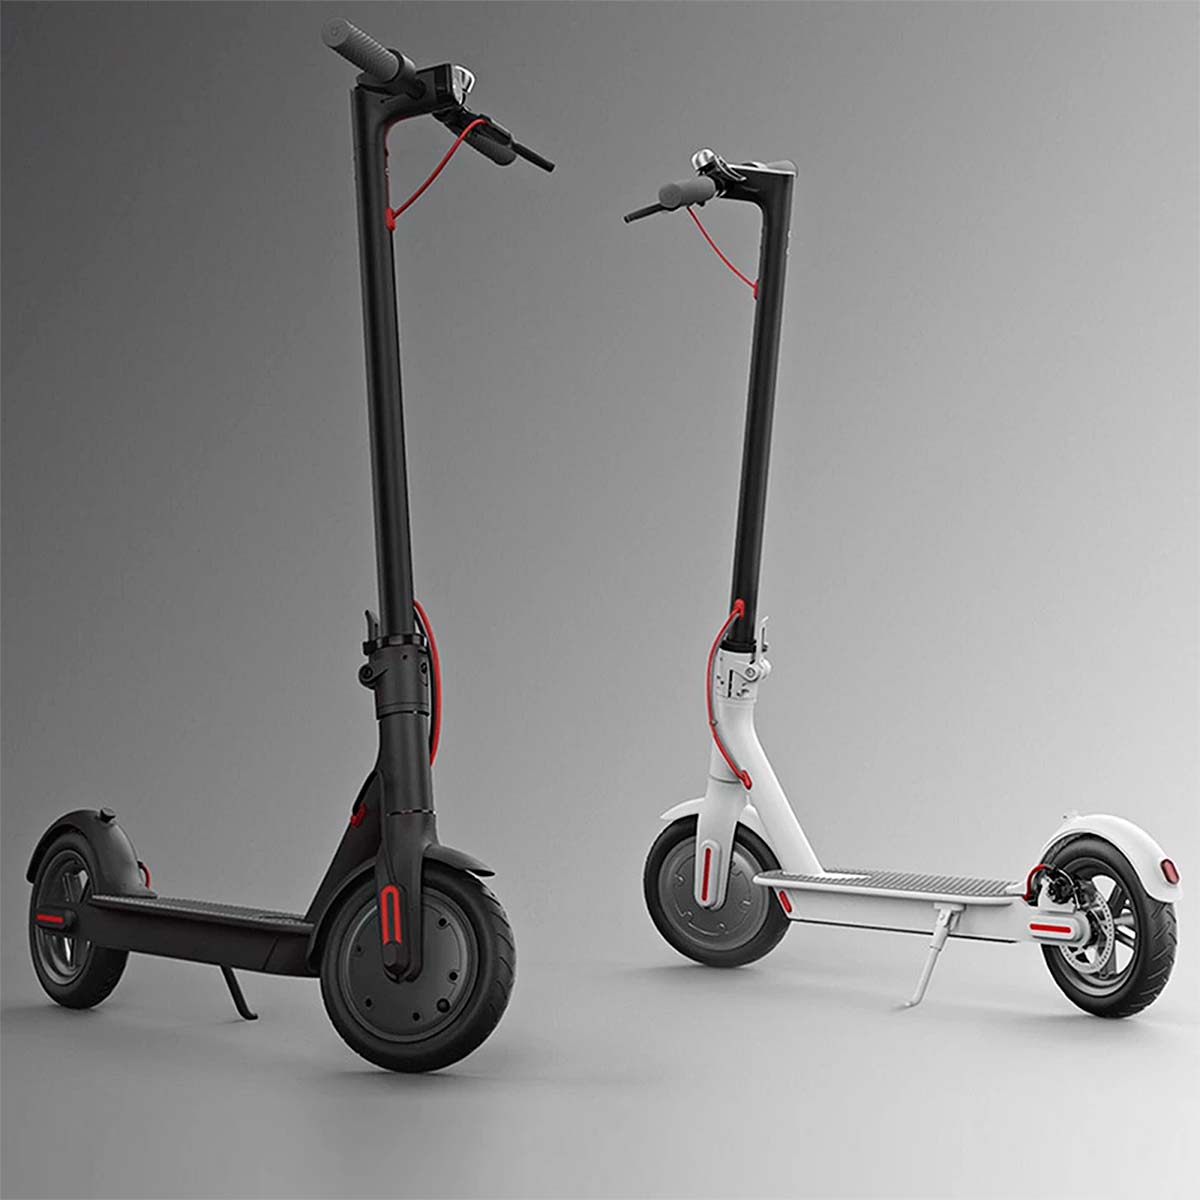 En TodoMountainBike: Quiero pasarme a la movilidad eléctrica, ¿cuánto me costará cargar la batería de un patinete, bici o coche?